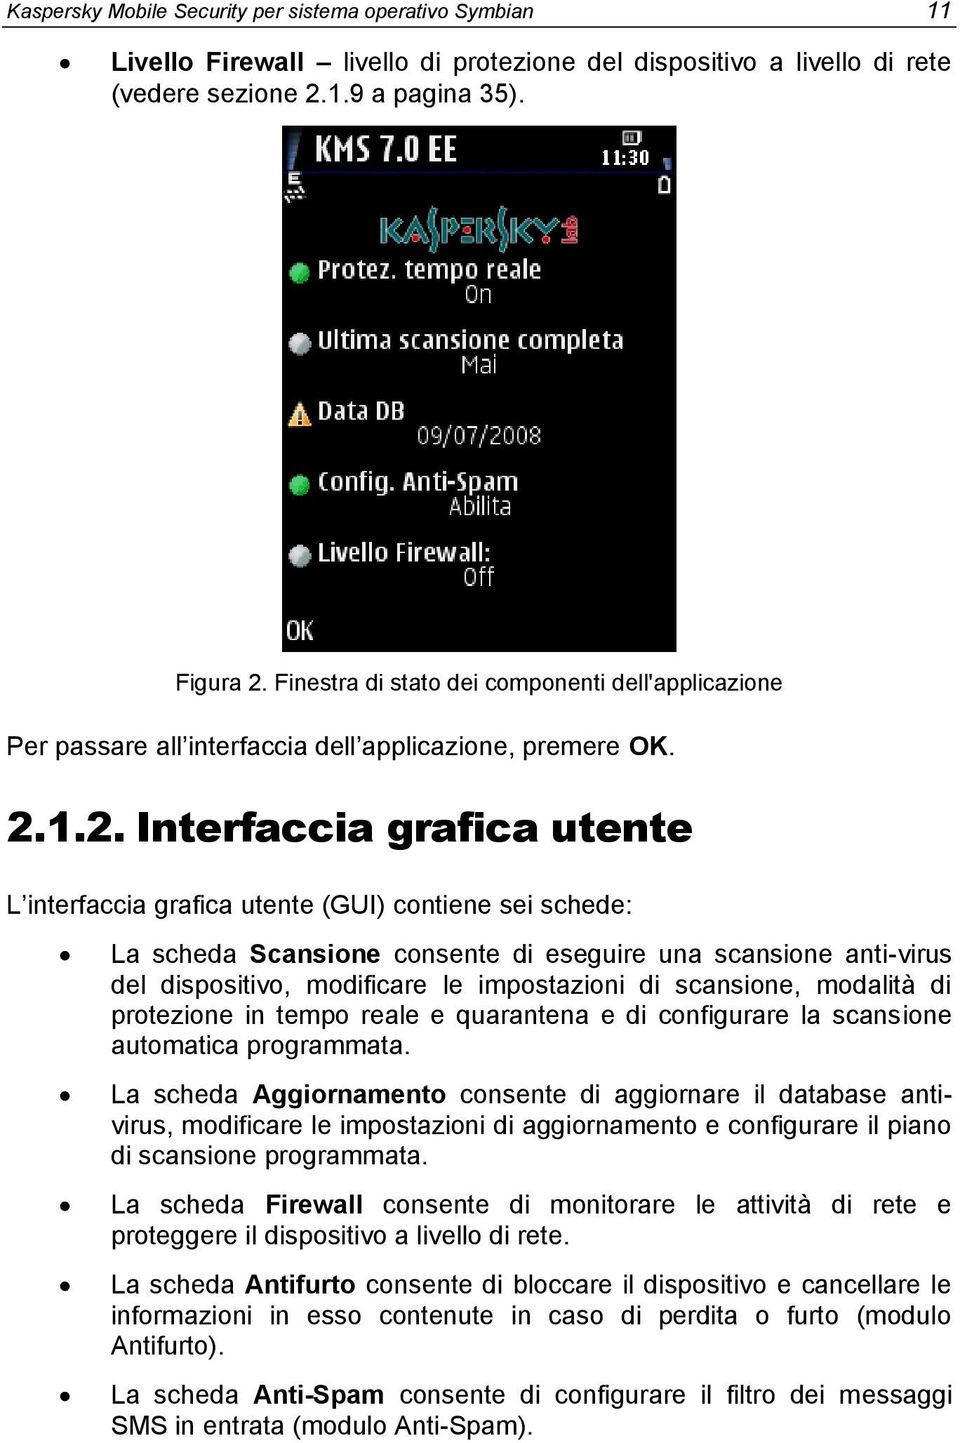 1.2. Interfaccia grafica utente L interfaccia grafica utente (GUI) contiene sei schede: La scheda Scansione consente di eseguire una scansione anti-virus del dispositivo, modificare le impostazioni